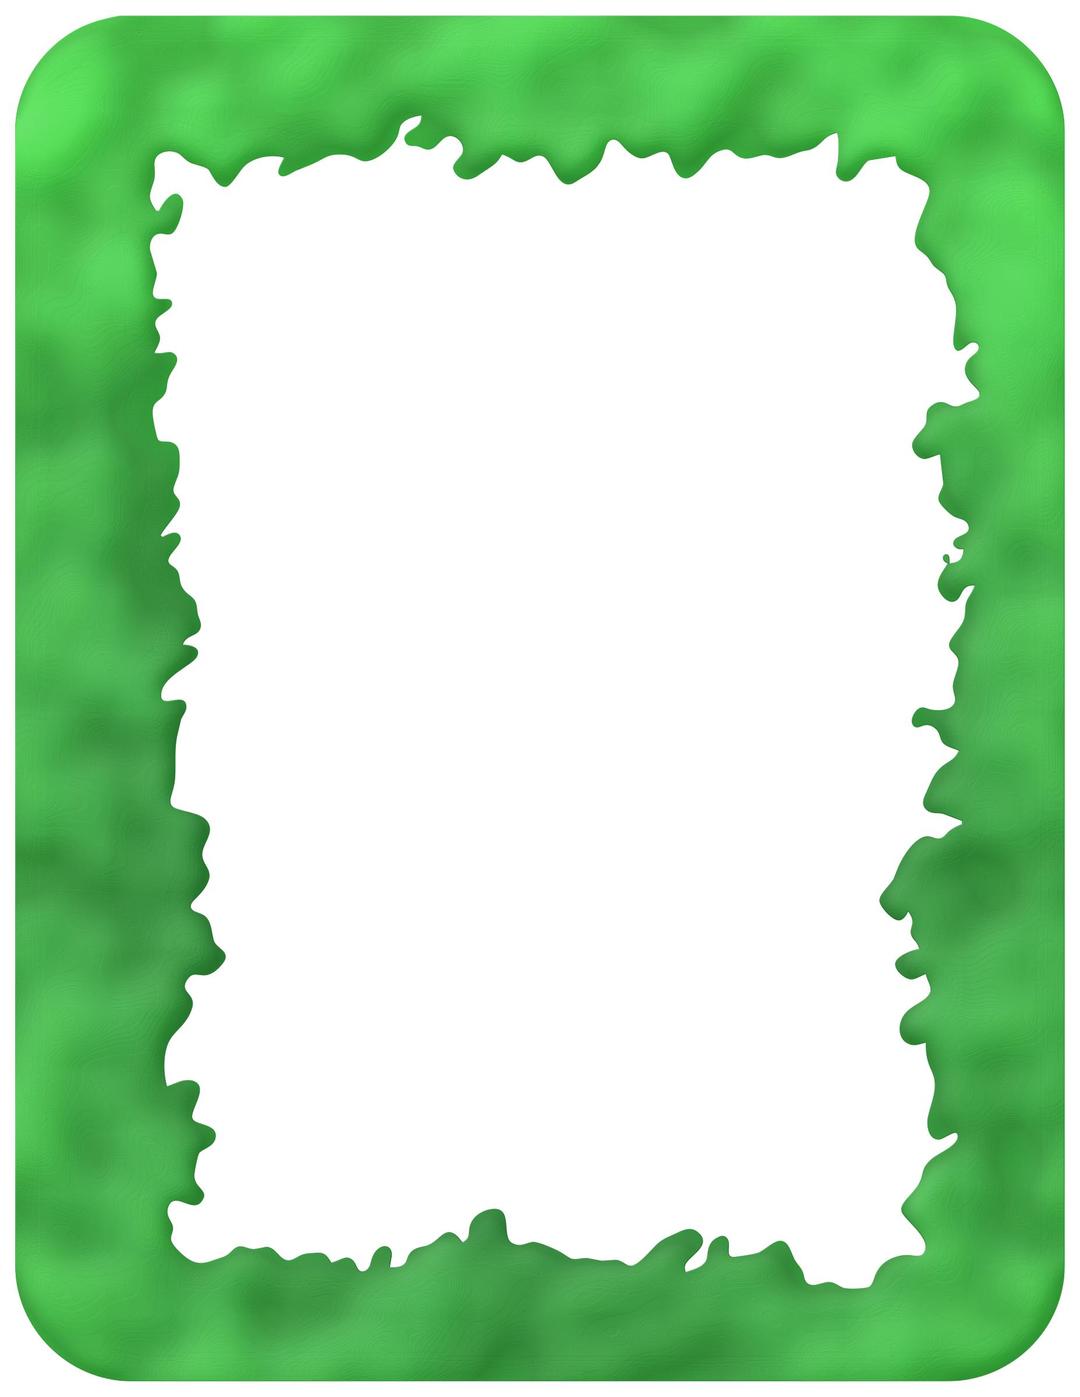 Slime Border png transparent